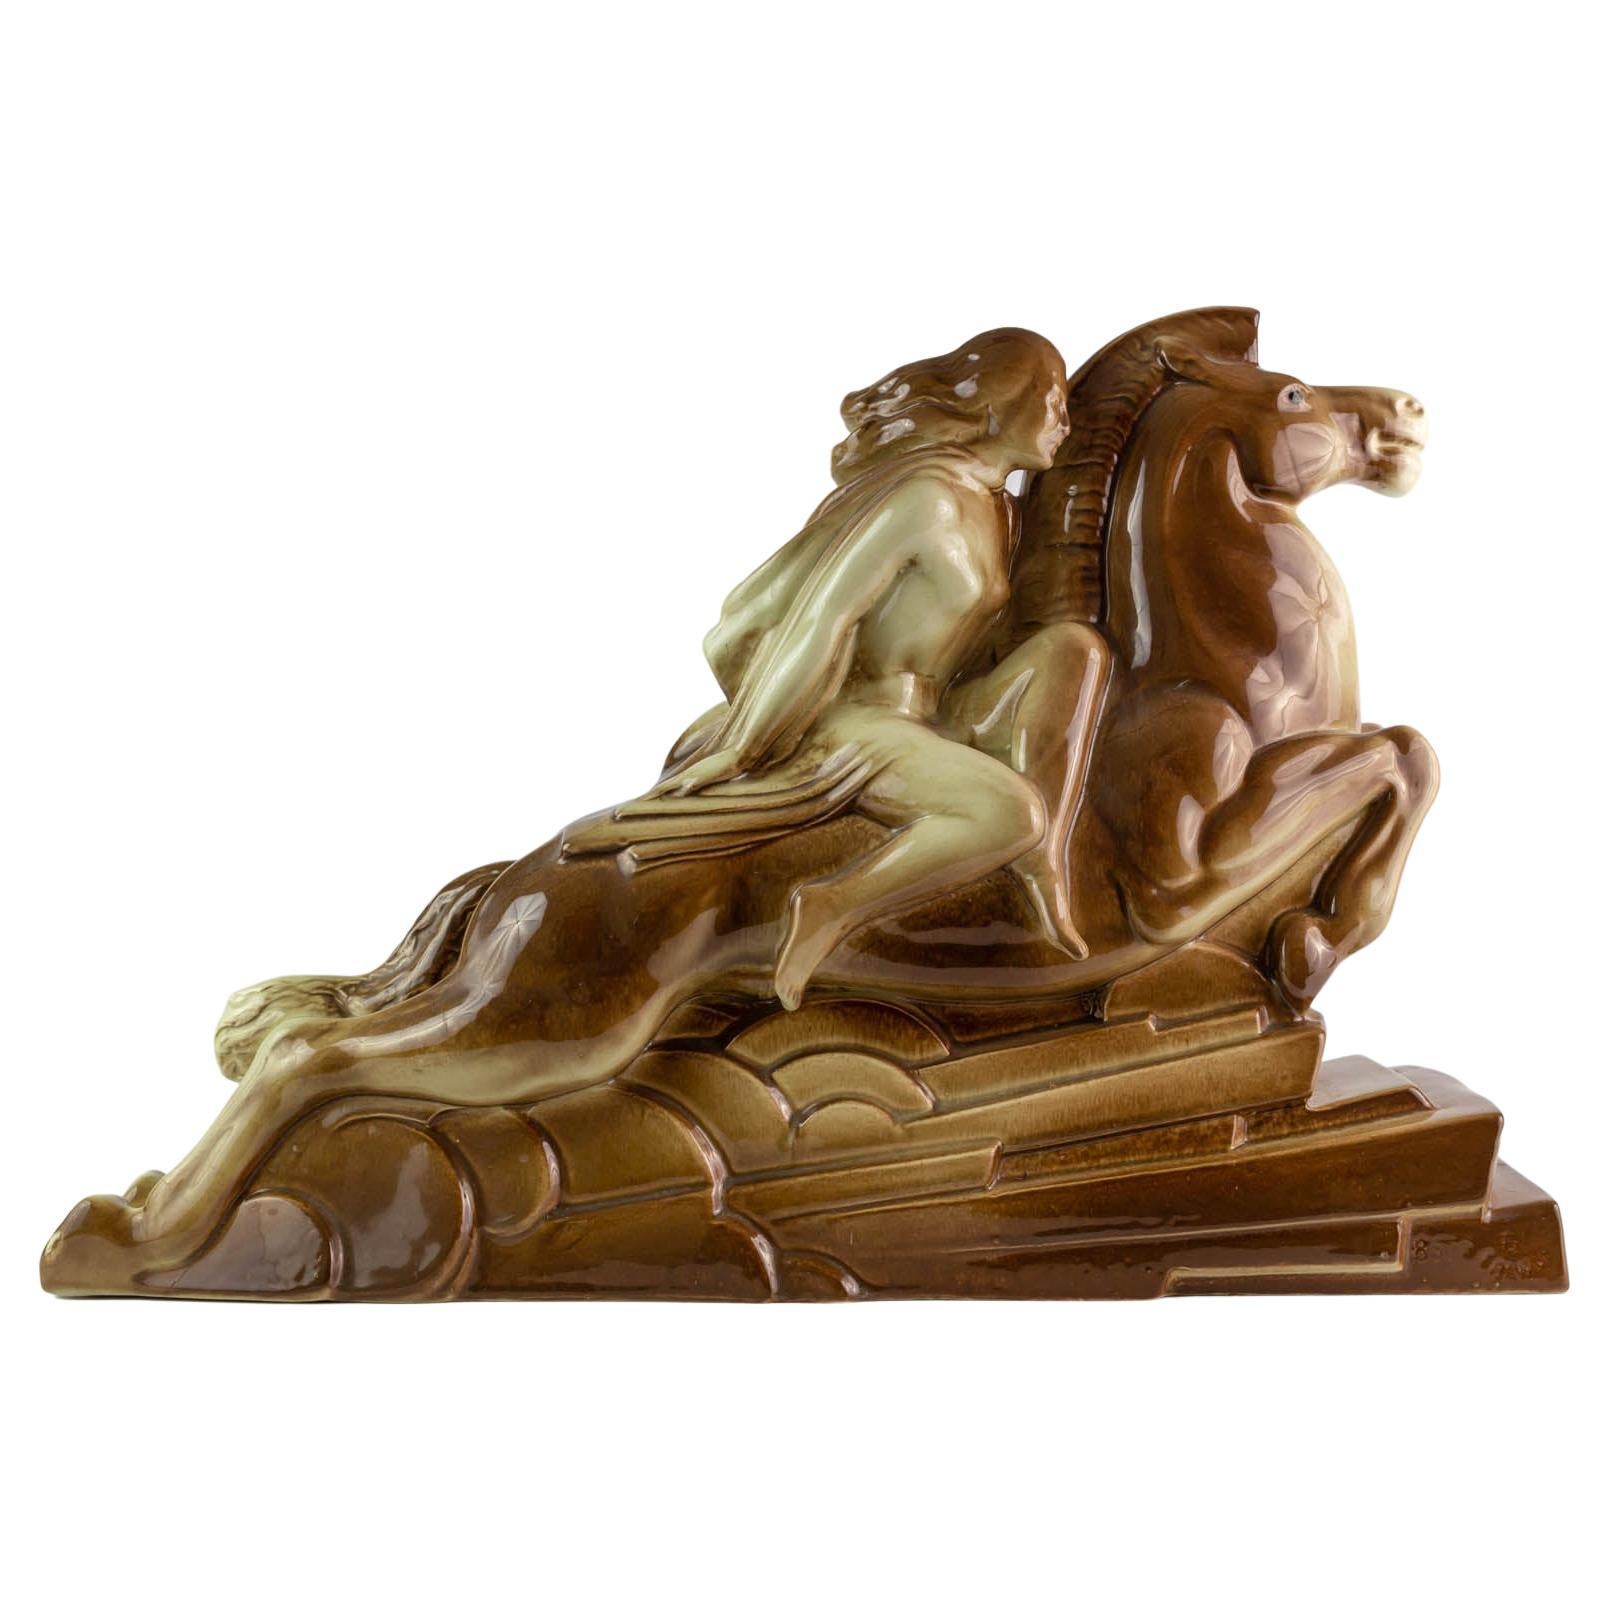 Art Deco Lemanceau Ceramic Sculpture Titled "Valkyrie" For Sale